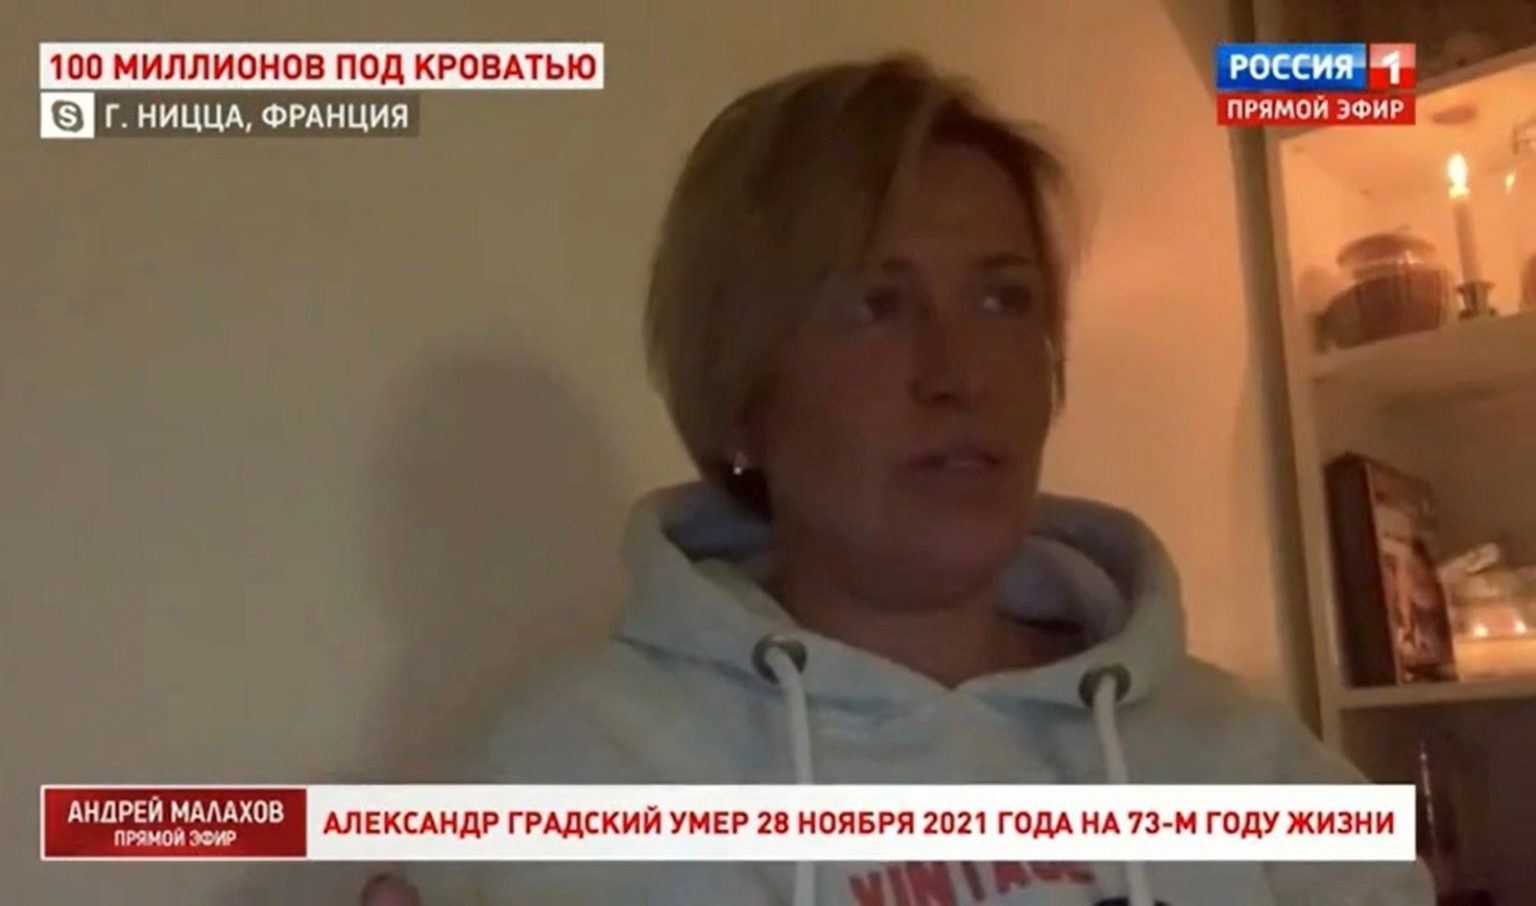 Сестра Александра Градского заявила, что его брак с Мариной Коташенко недействителен